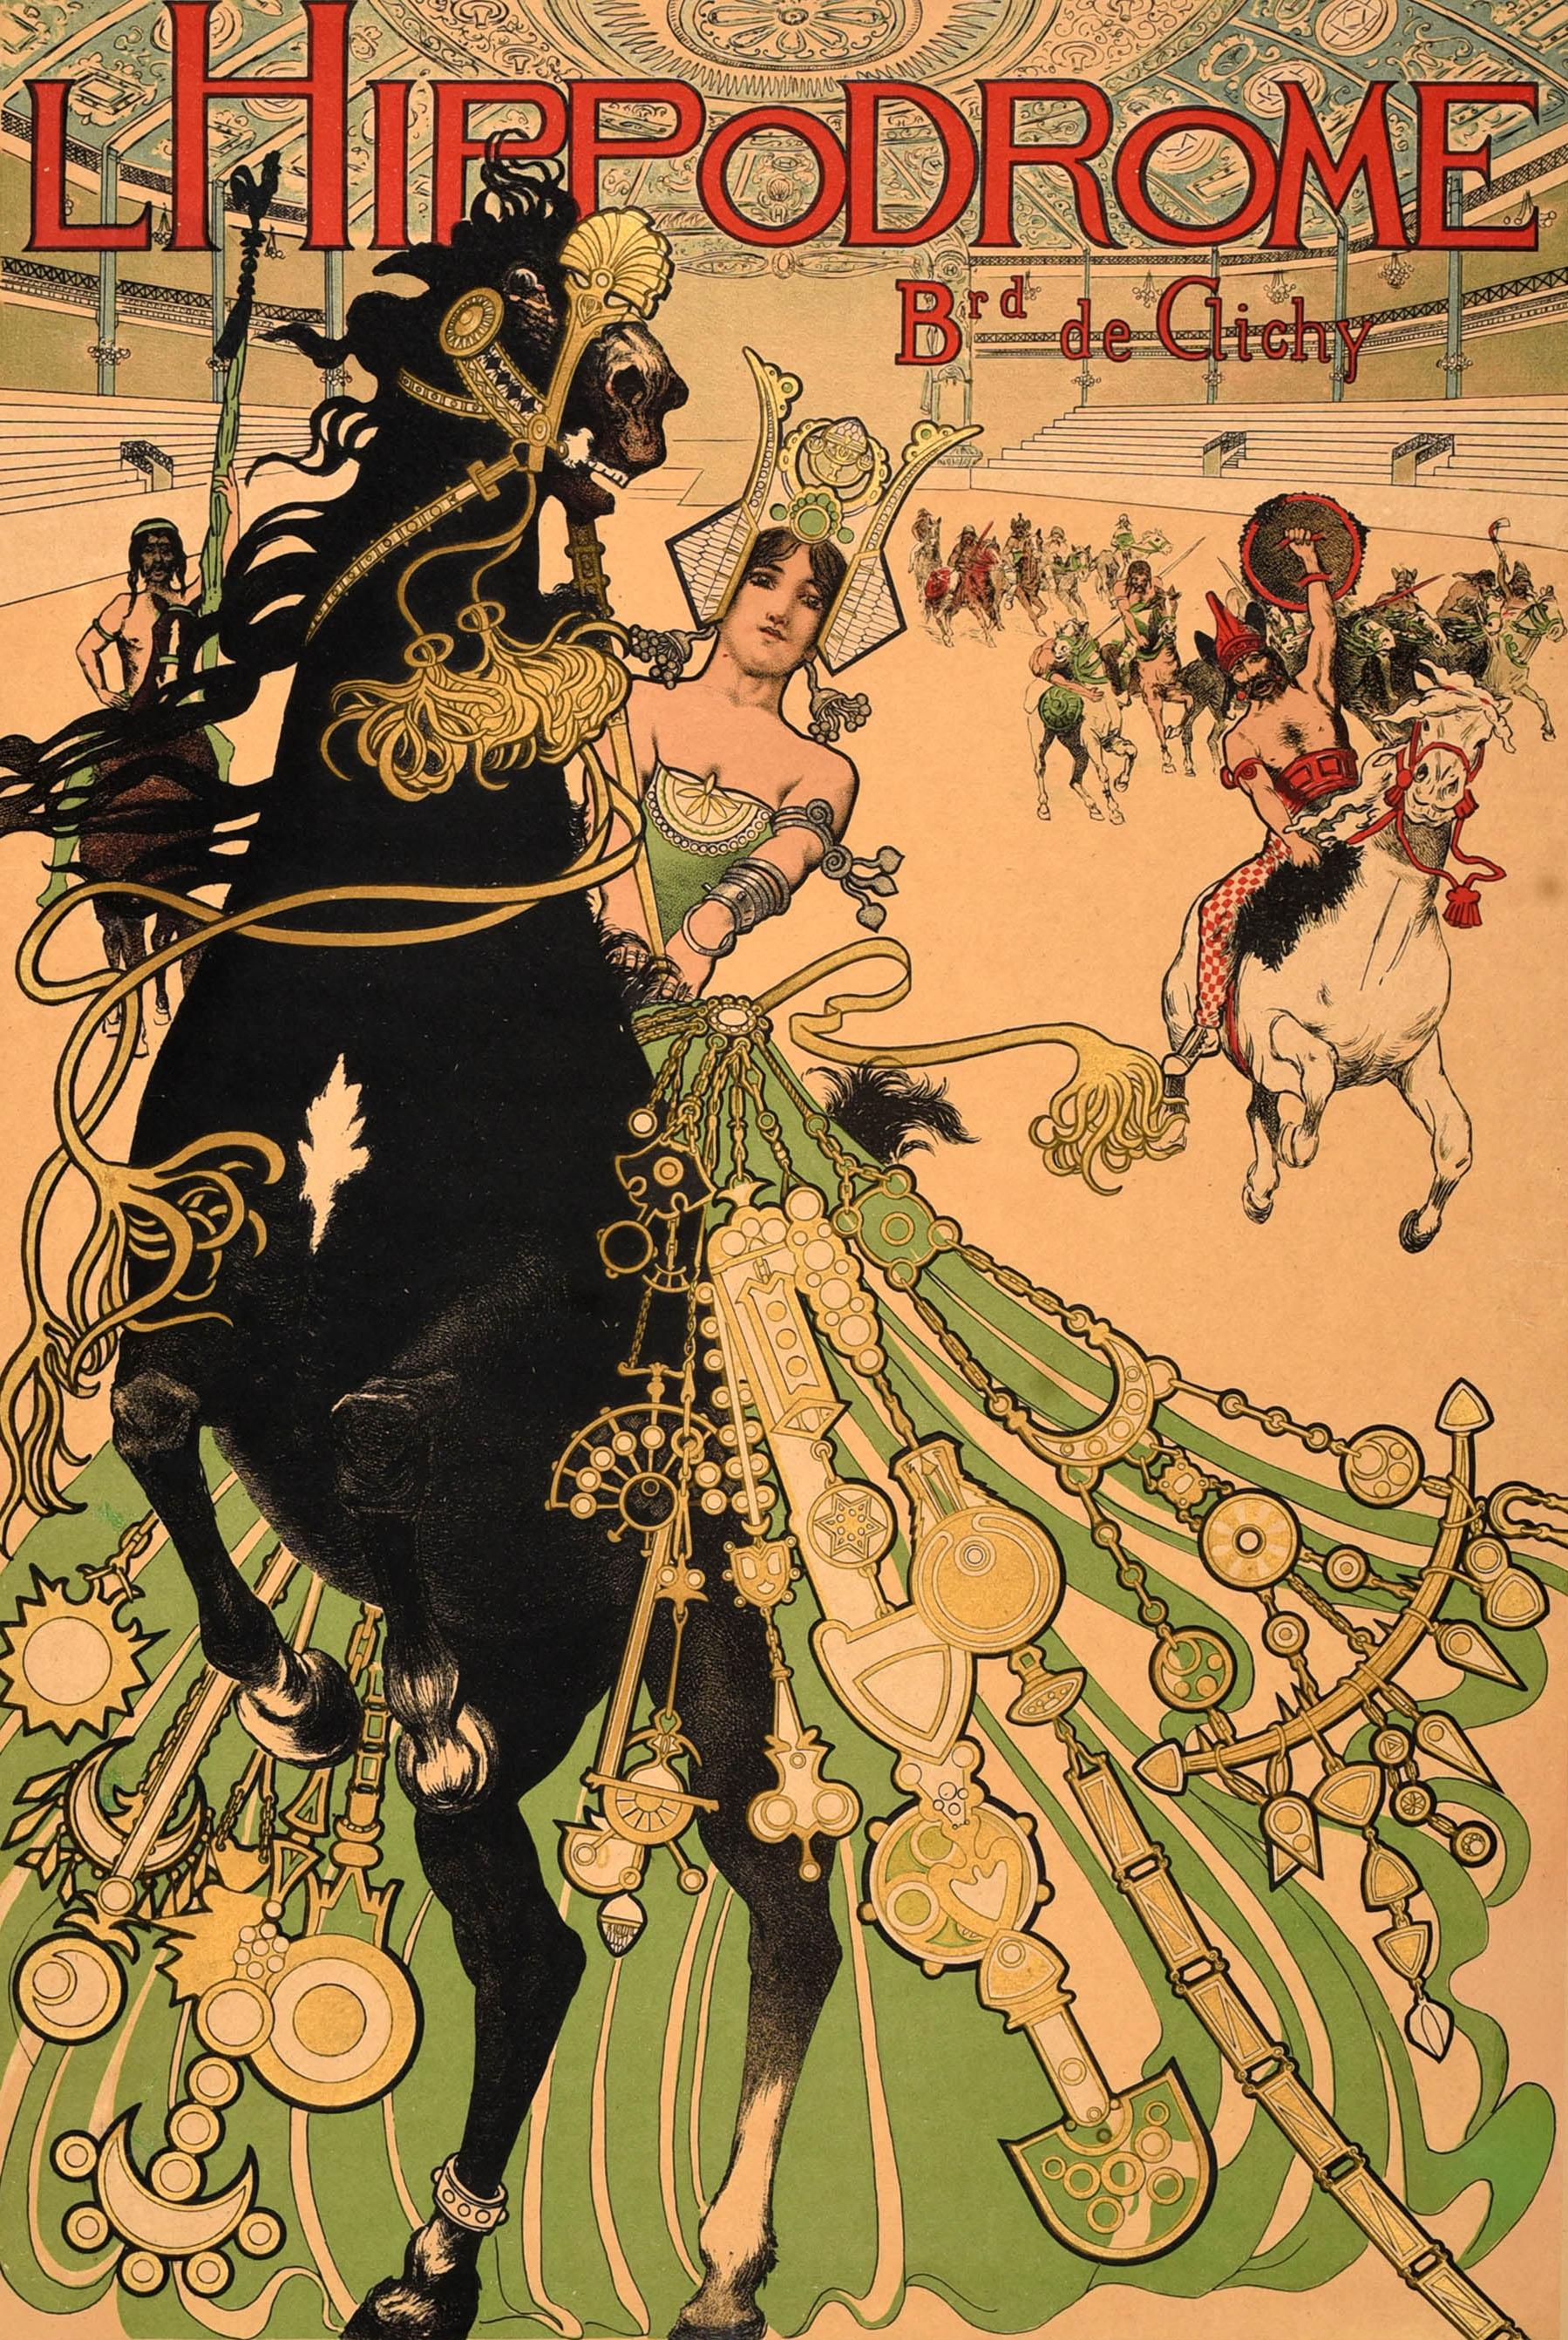 Affiche originale ancienne de style Art Nouveau annonçant l'Hippodrome du Boulevard de Clichy. L'œuvre dramatique du graphiste français Manuel Orazi (1860-1934) représente une dame à cheval dans un costume et une coiffe flamboyants, guidant d'autres